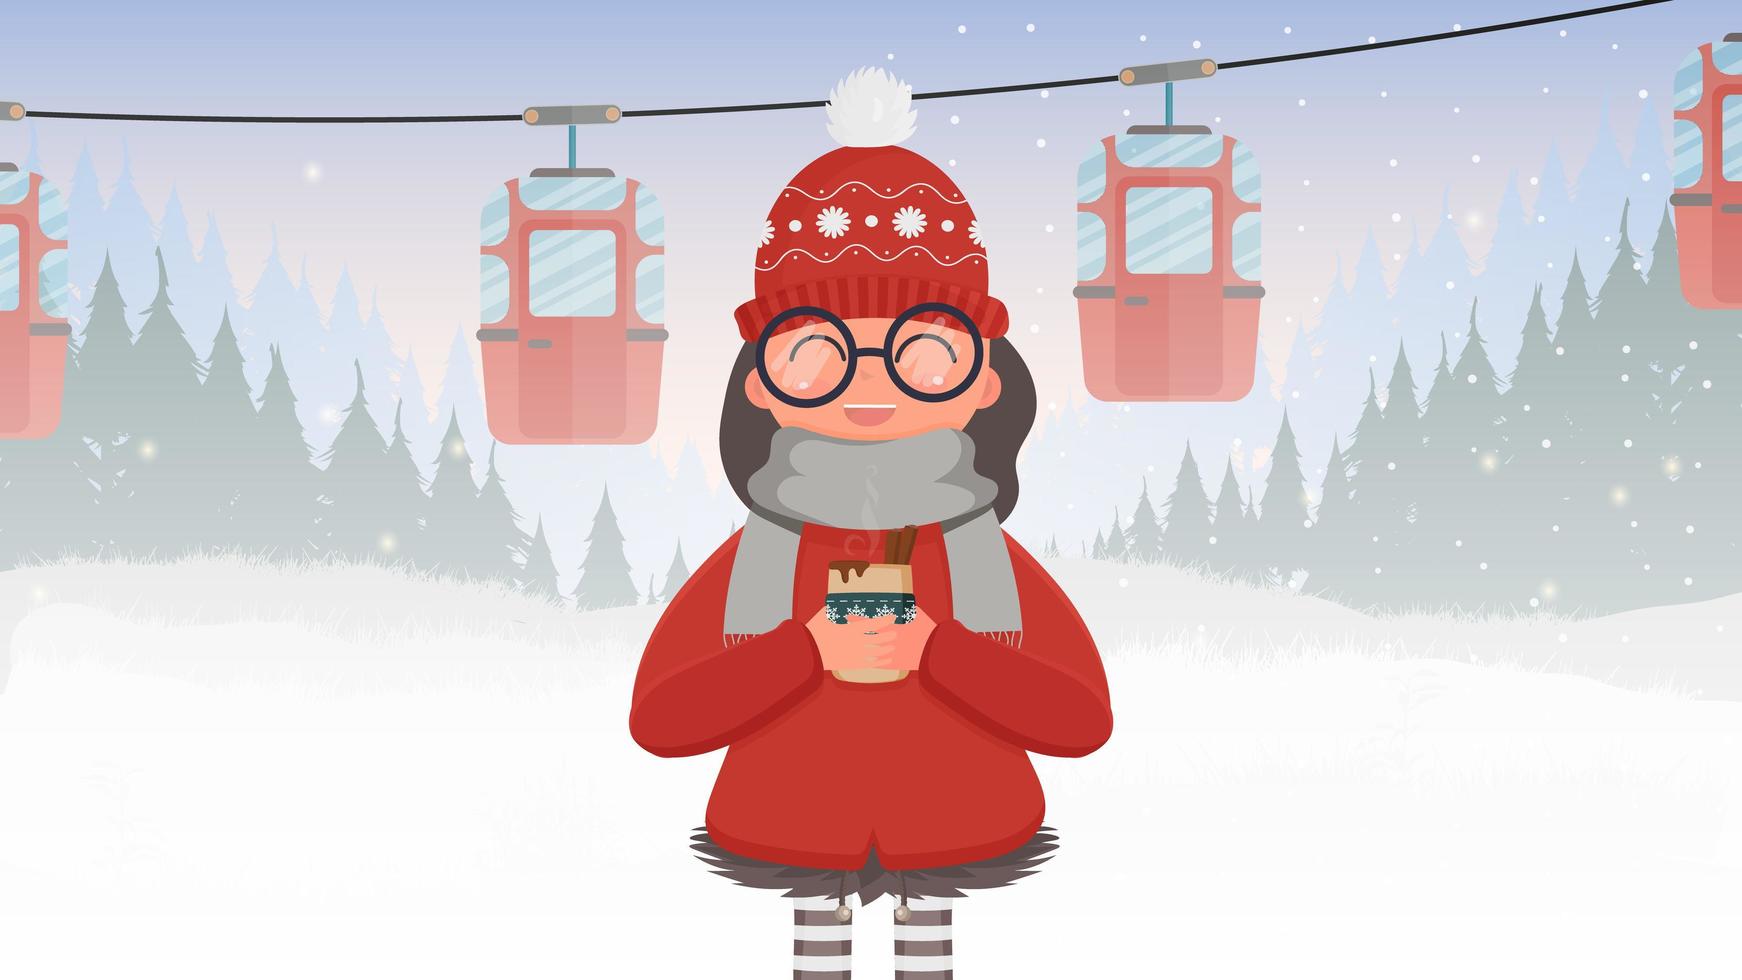 en flicka i röda kläder håller en varm drink. linbana med släp i vinterskogen. bergbana. skogen är med rådjur och snö. tecknad stil. vektor illustration.